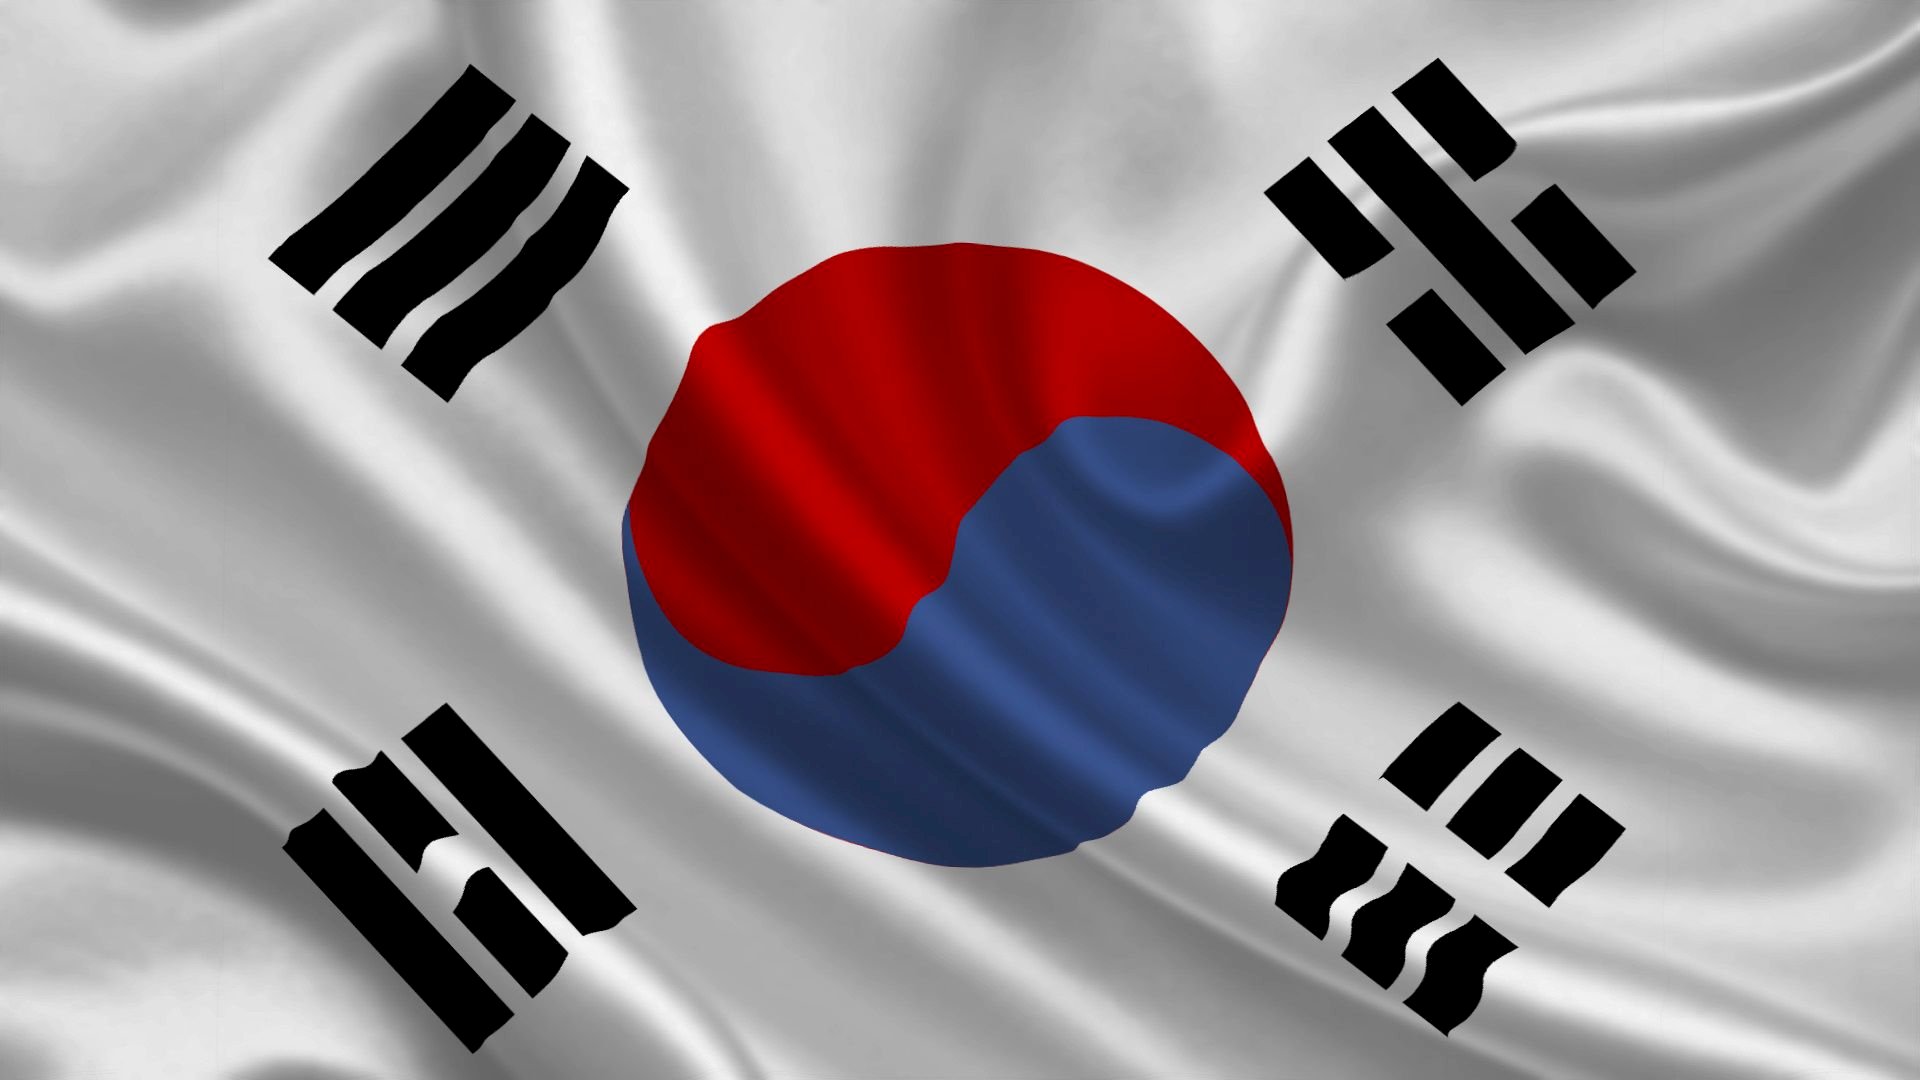 Hình ảnh cờ Hàn Quốc: Hình ảnh cờ Hàn Quốc là tượng trưng cho nền văn hóa cổ xưa, những truyền thống lâu đời và sự phát triển mạnh mẽ về kinh tế đương đại của Hàn Quốc. Trên khắp thế giới, hình ảnh cờ Hàn Quốc xuất hiện trong các sự kiện lớn, gửi tín hiệu về sự đoàn kết và sự thành công của đất nước. Nếu bạn muốn tìm hiểu về văn hóa Hàn Quốc, thì hình ảnh cờ Hàn Quốc là điều không thể bỏ qua.